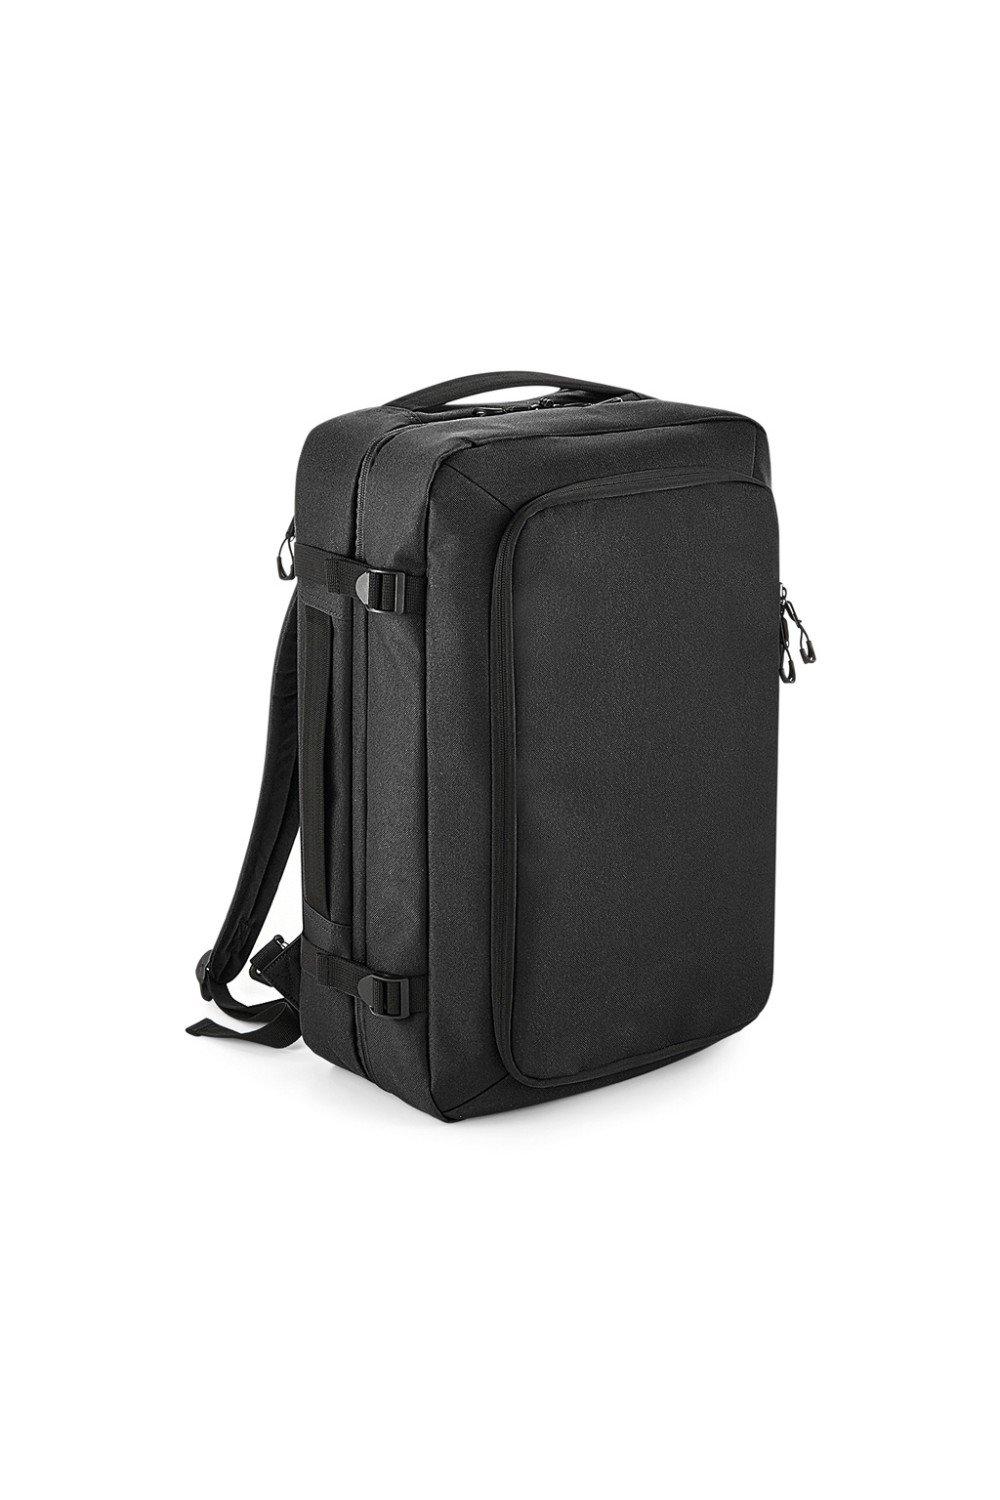 Рюкзак для ручной клади Escape Bagbase, черный